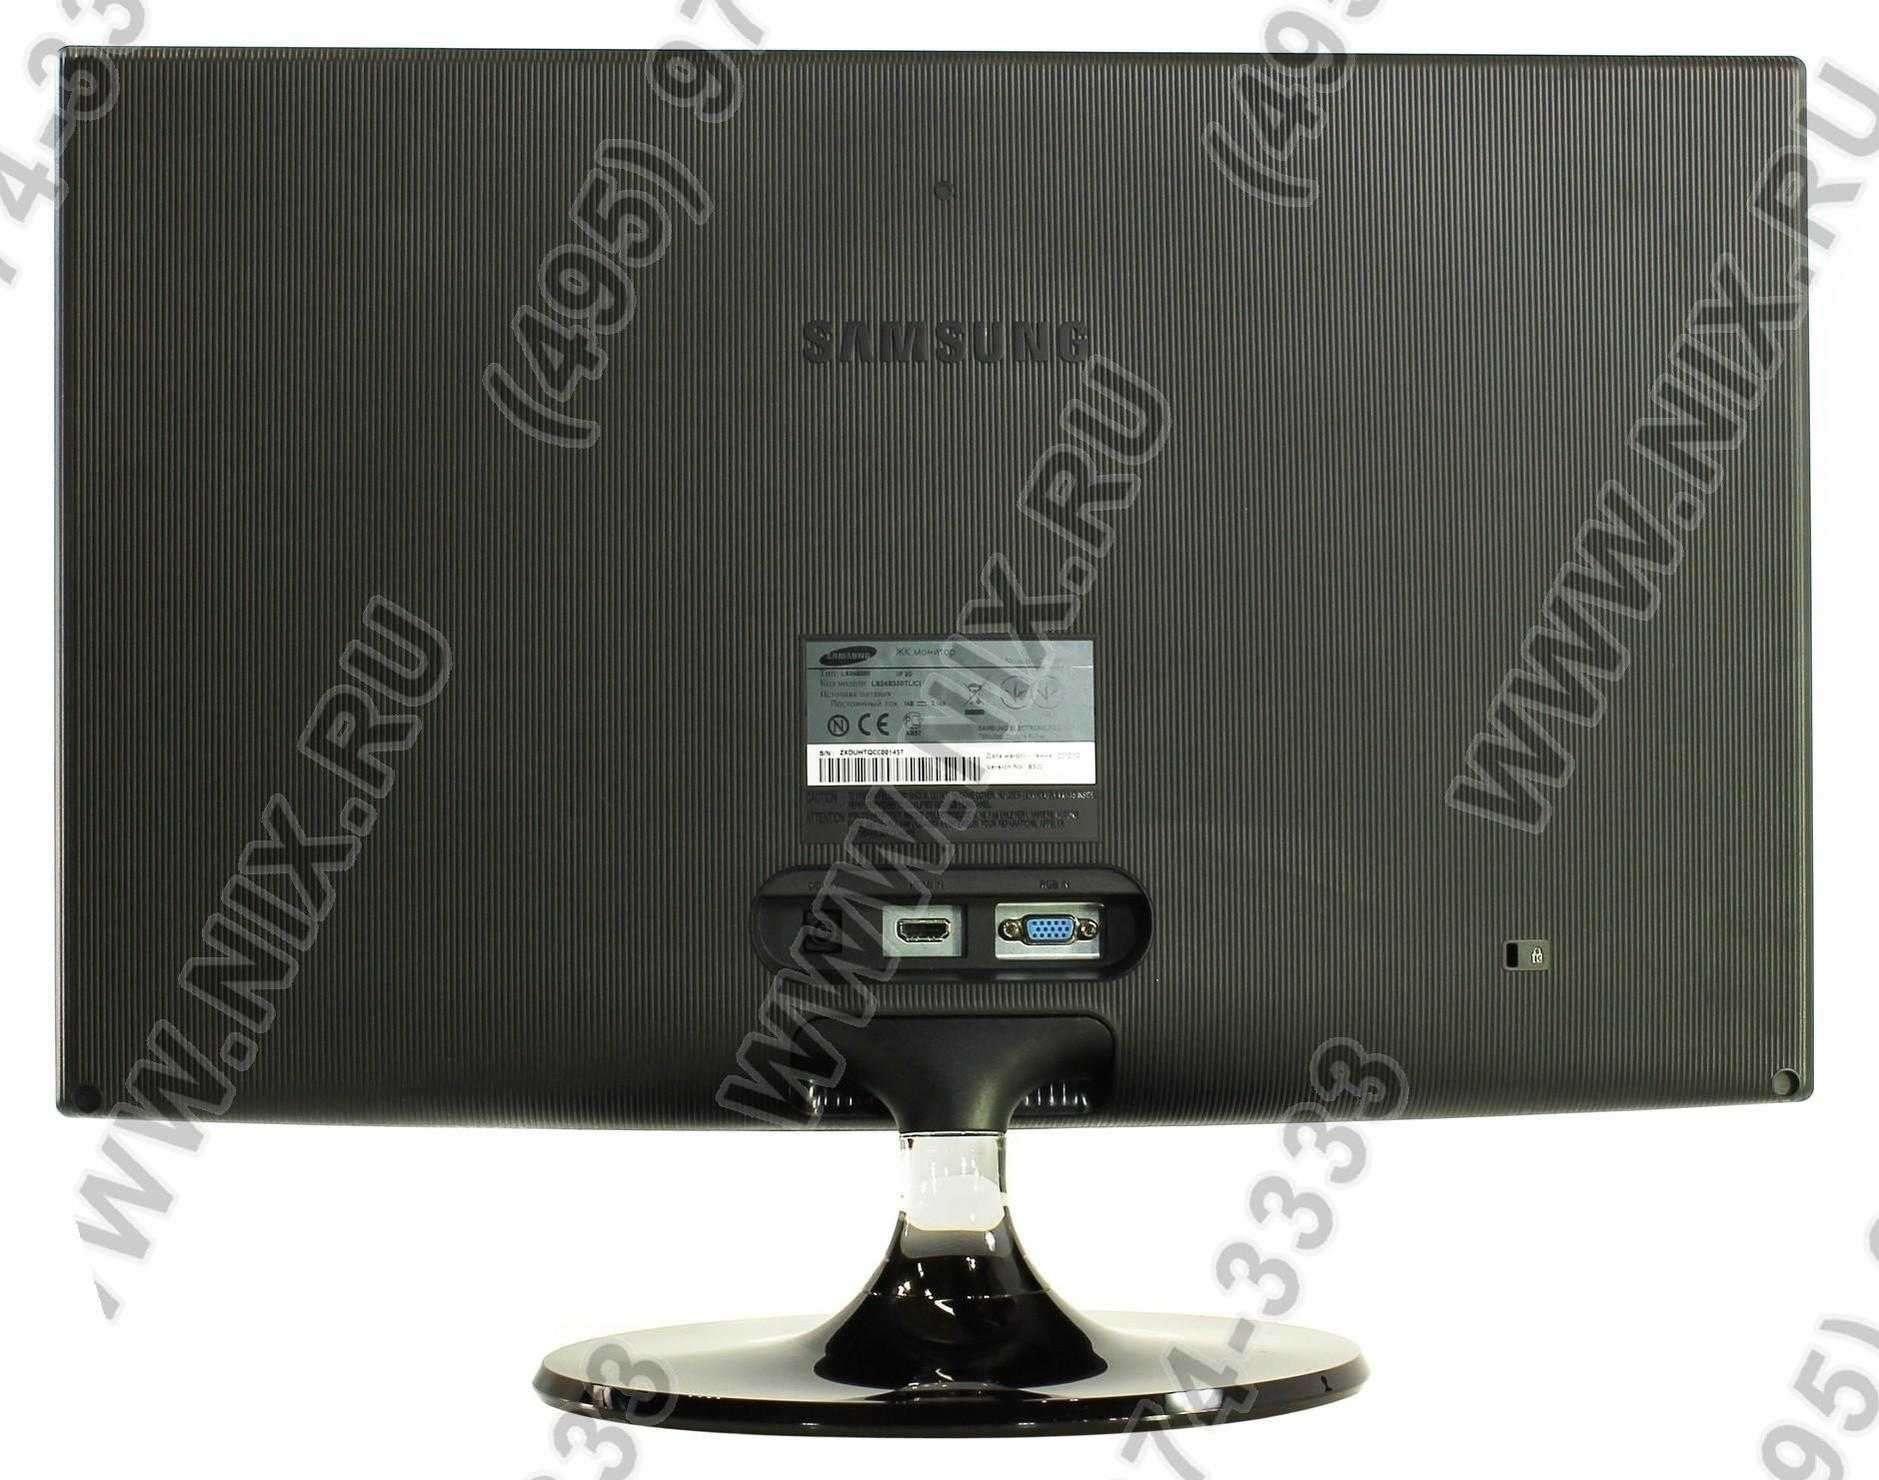 Жк монитор 23" samsung s23b350t — купить, цена и характеристики, отзывы